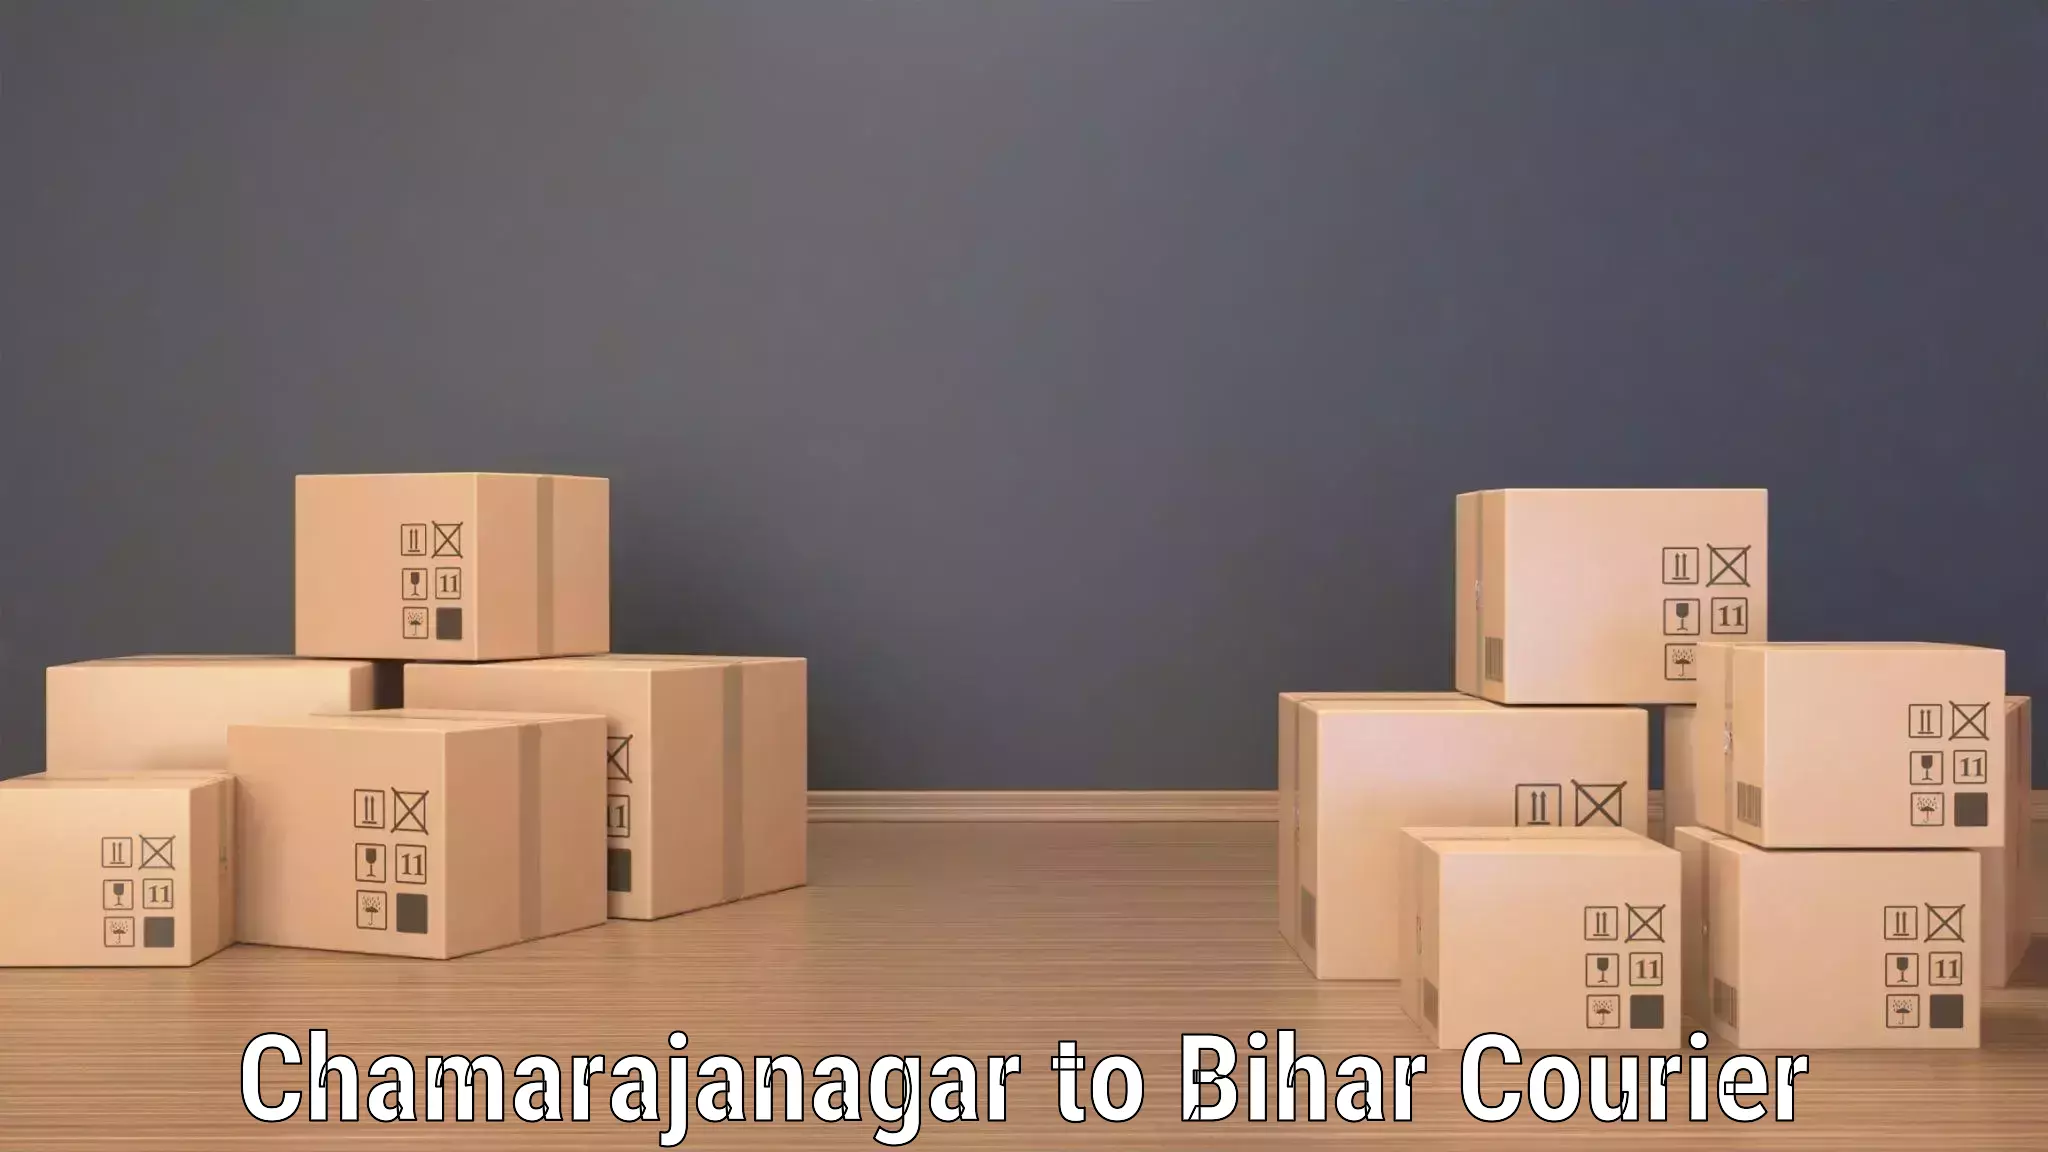 Logistics service provider Chamarajanagar to Bihar Sharif